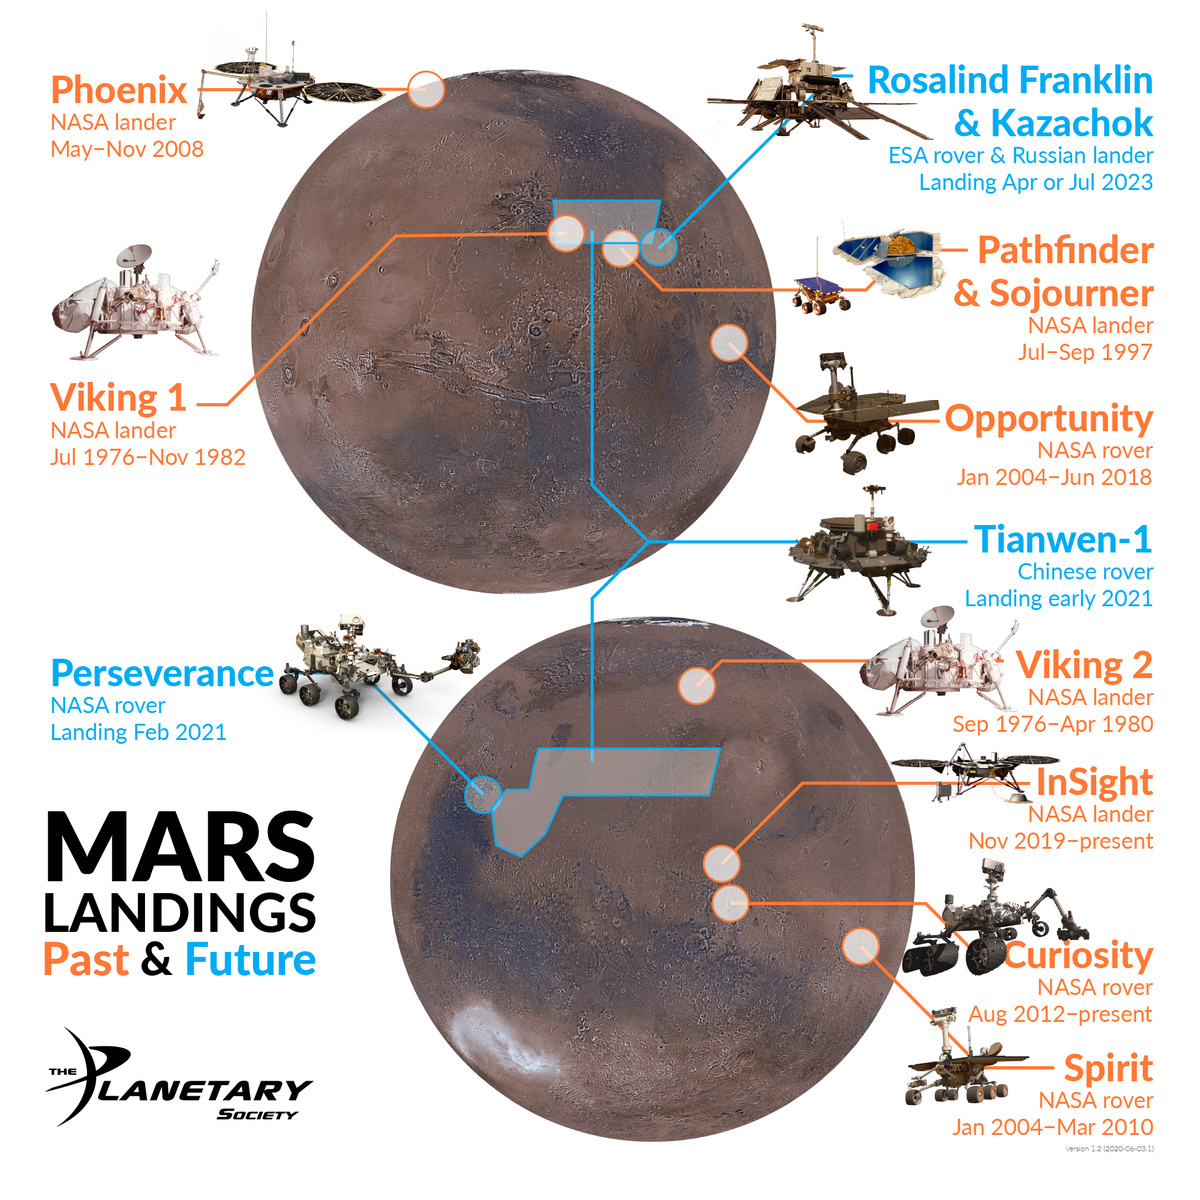 Выполнять задания марс. Карта Марса для высадки. Исследования Марса инфографика. Миссии на Марс инфографика. Карта марсоходов на Марсе.